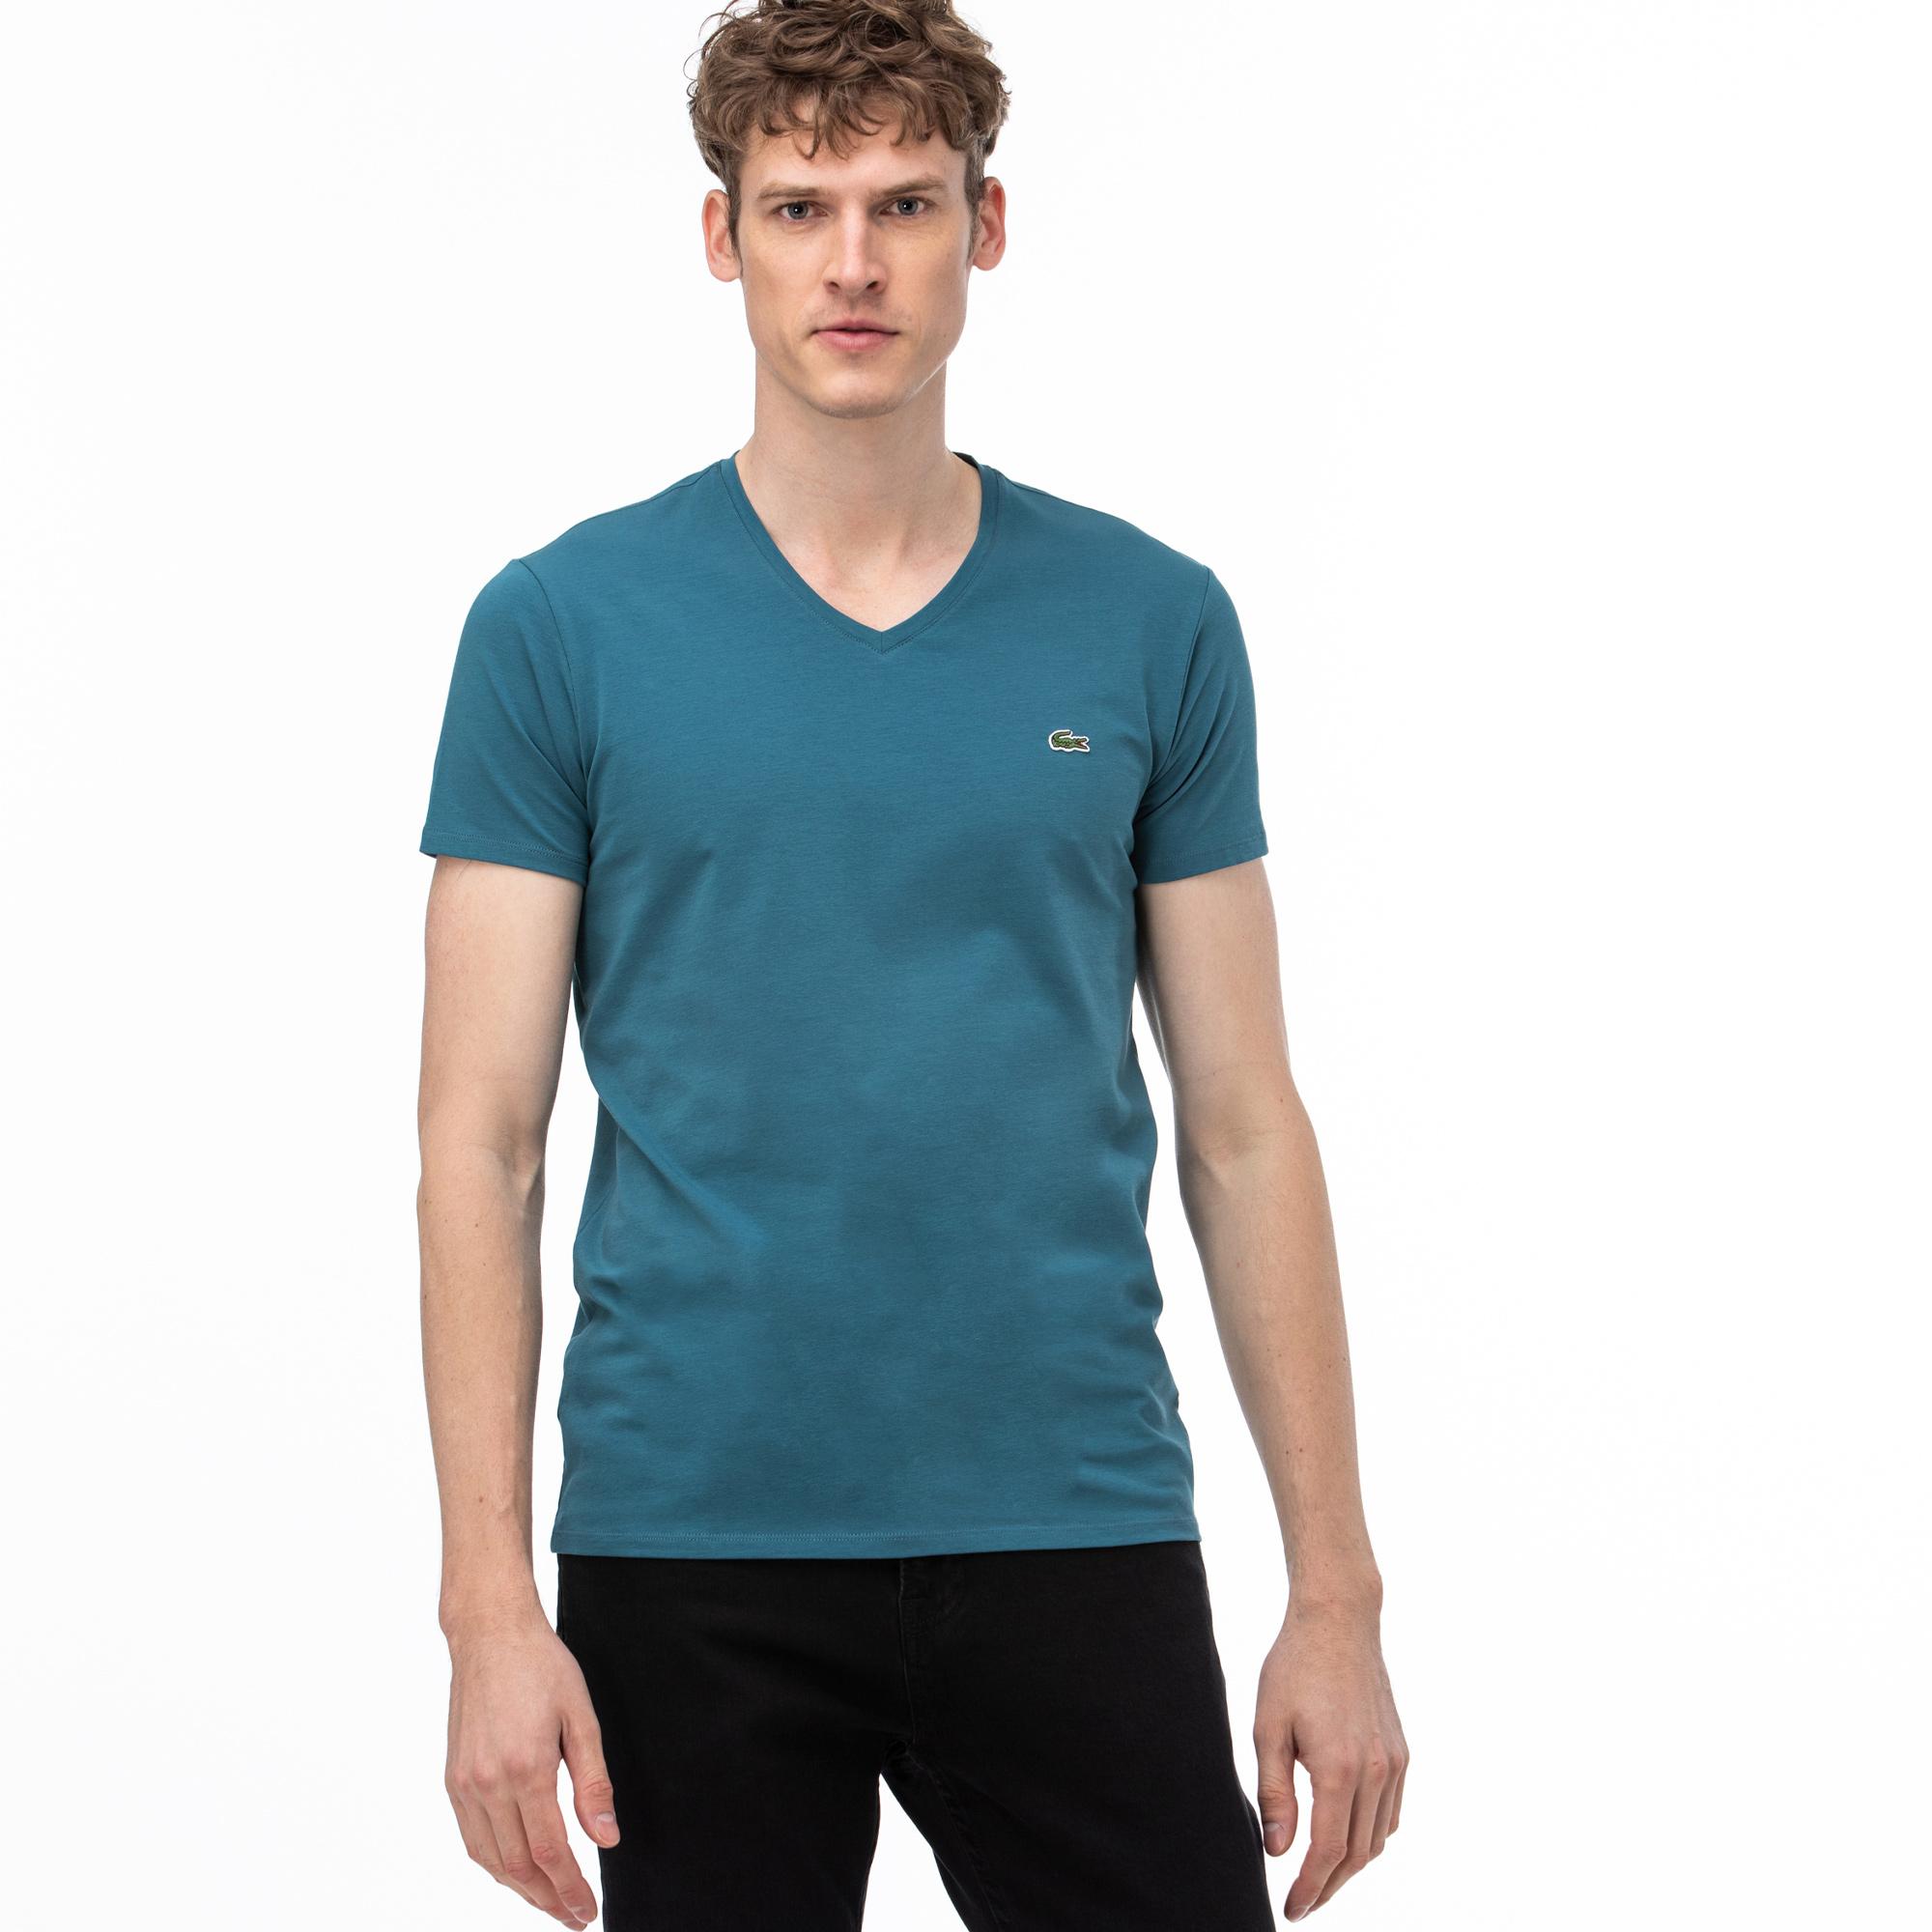 Lacoste Erkek V Yaka Yeşil T-Shirt. 2